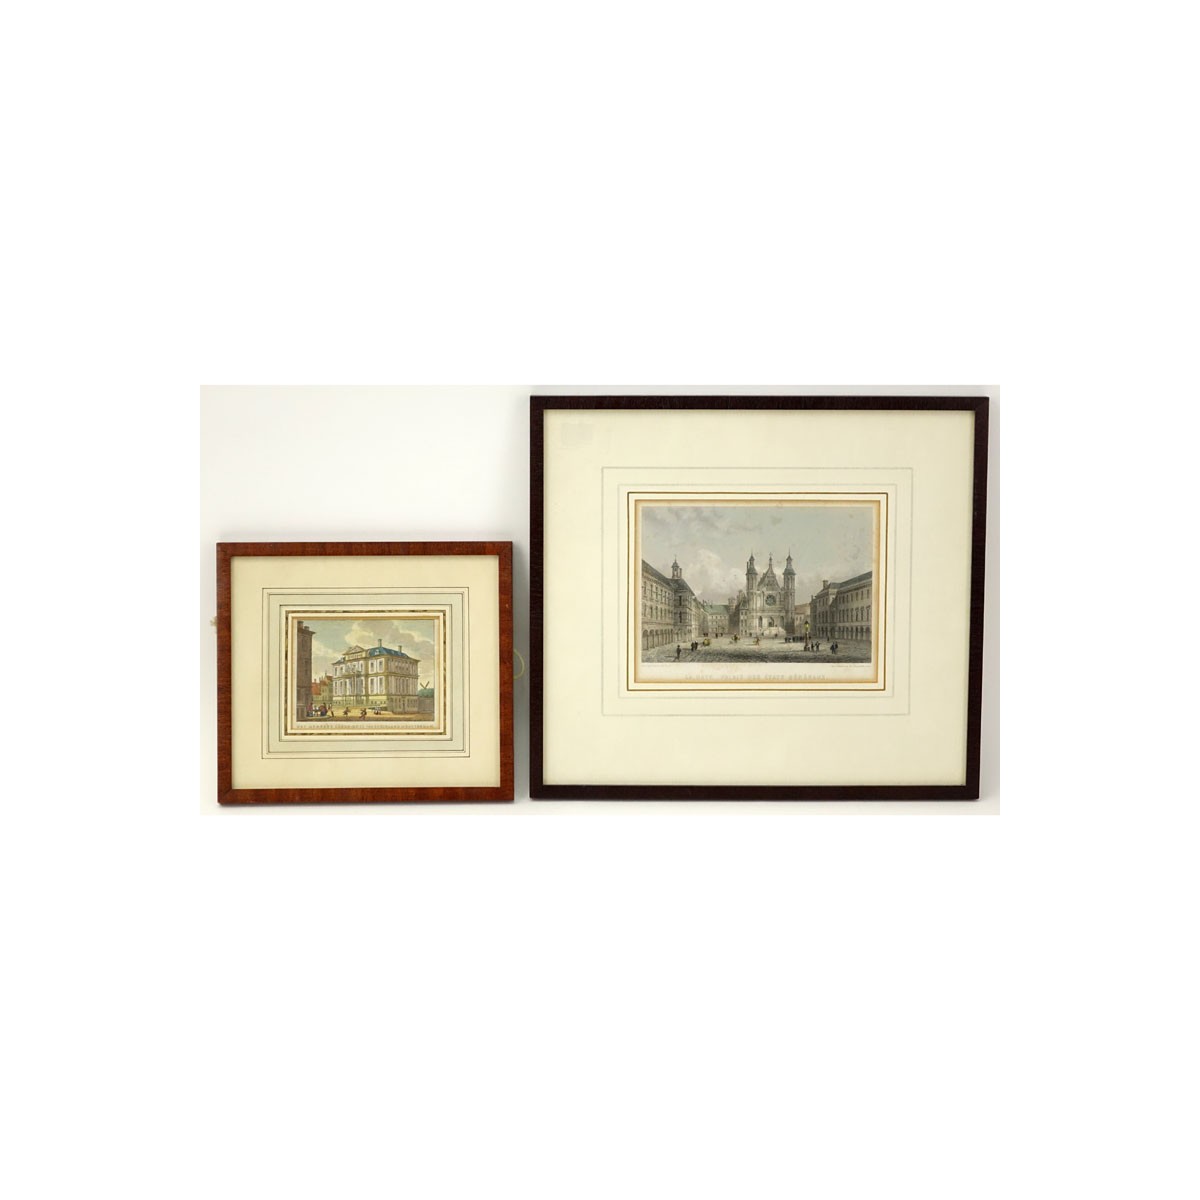 Two (2) Antique Color Engravings. Comprise:  A. and E. Rouargue "La Haye, P